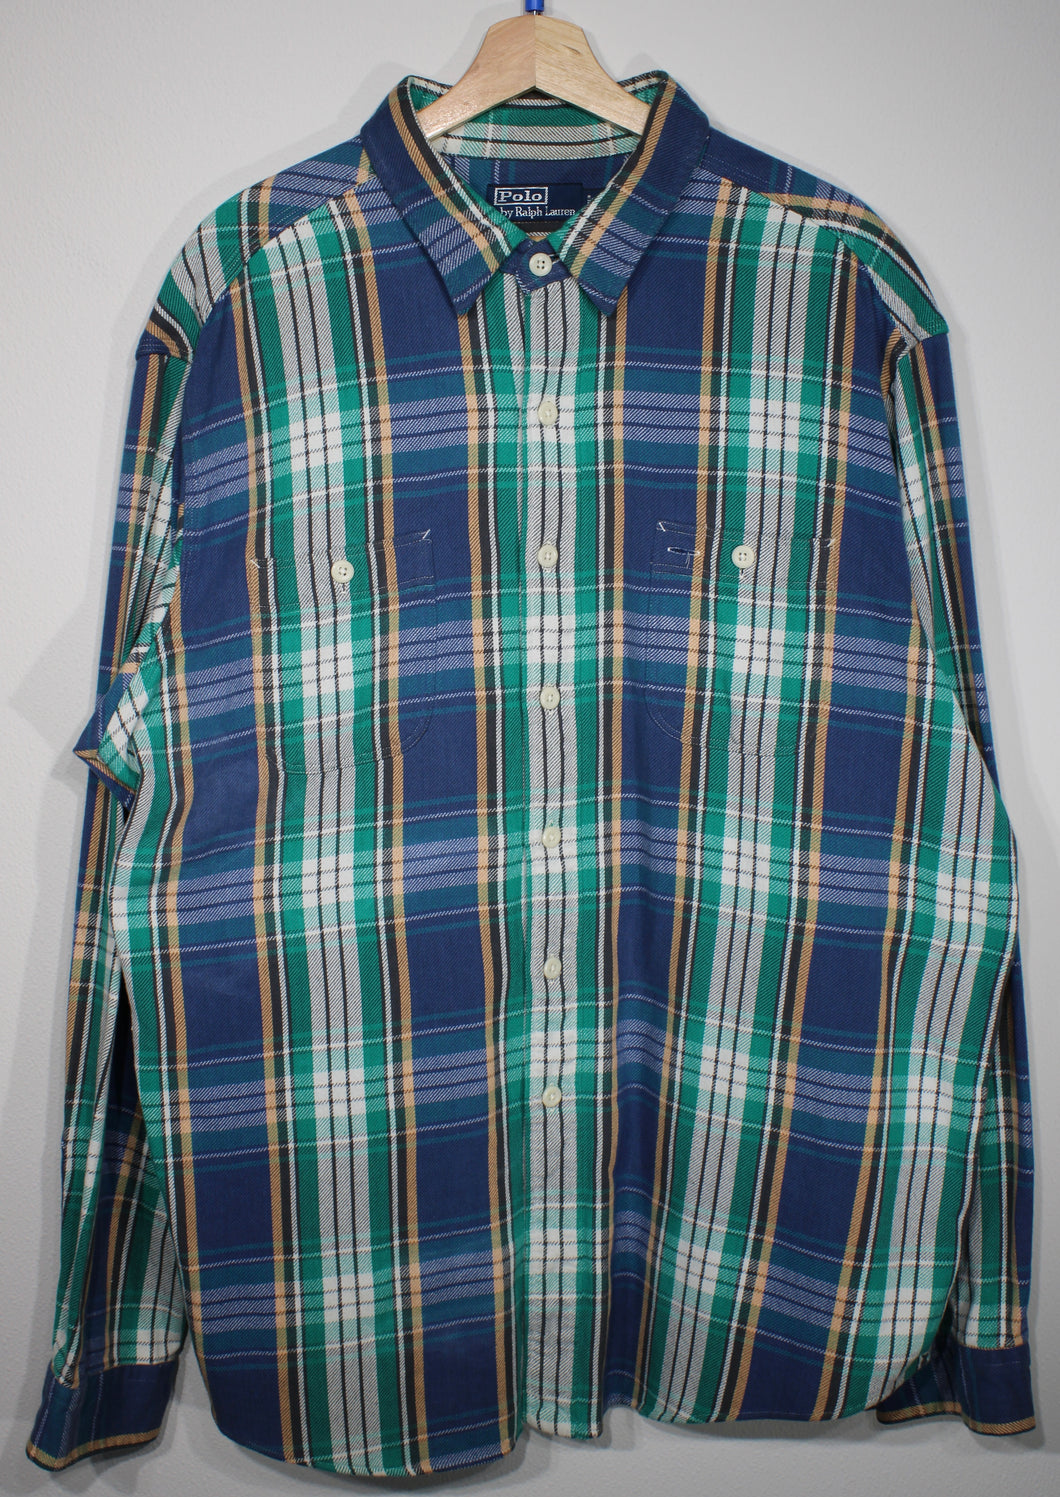 Vintage Polo Ralph Lauren Blue Flannel Shirt sz 2XL